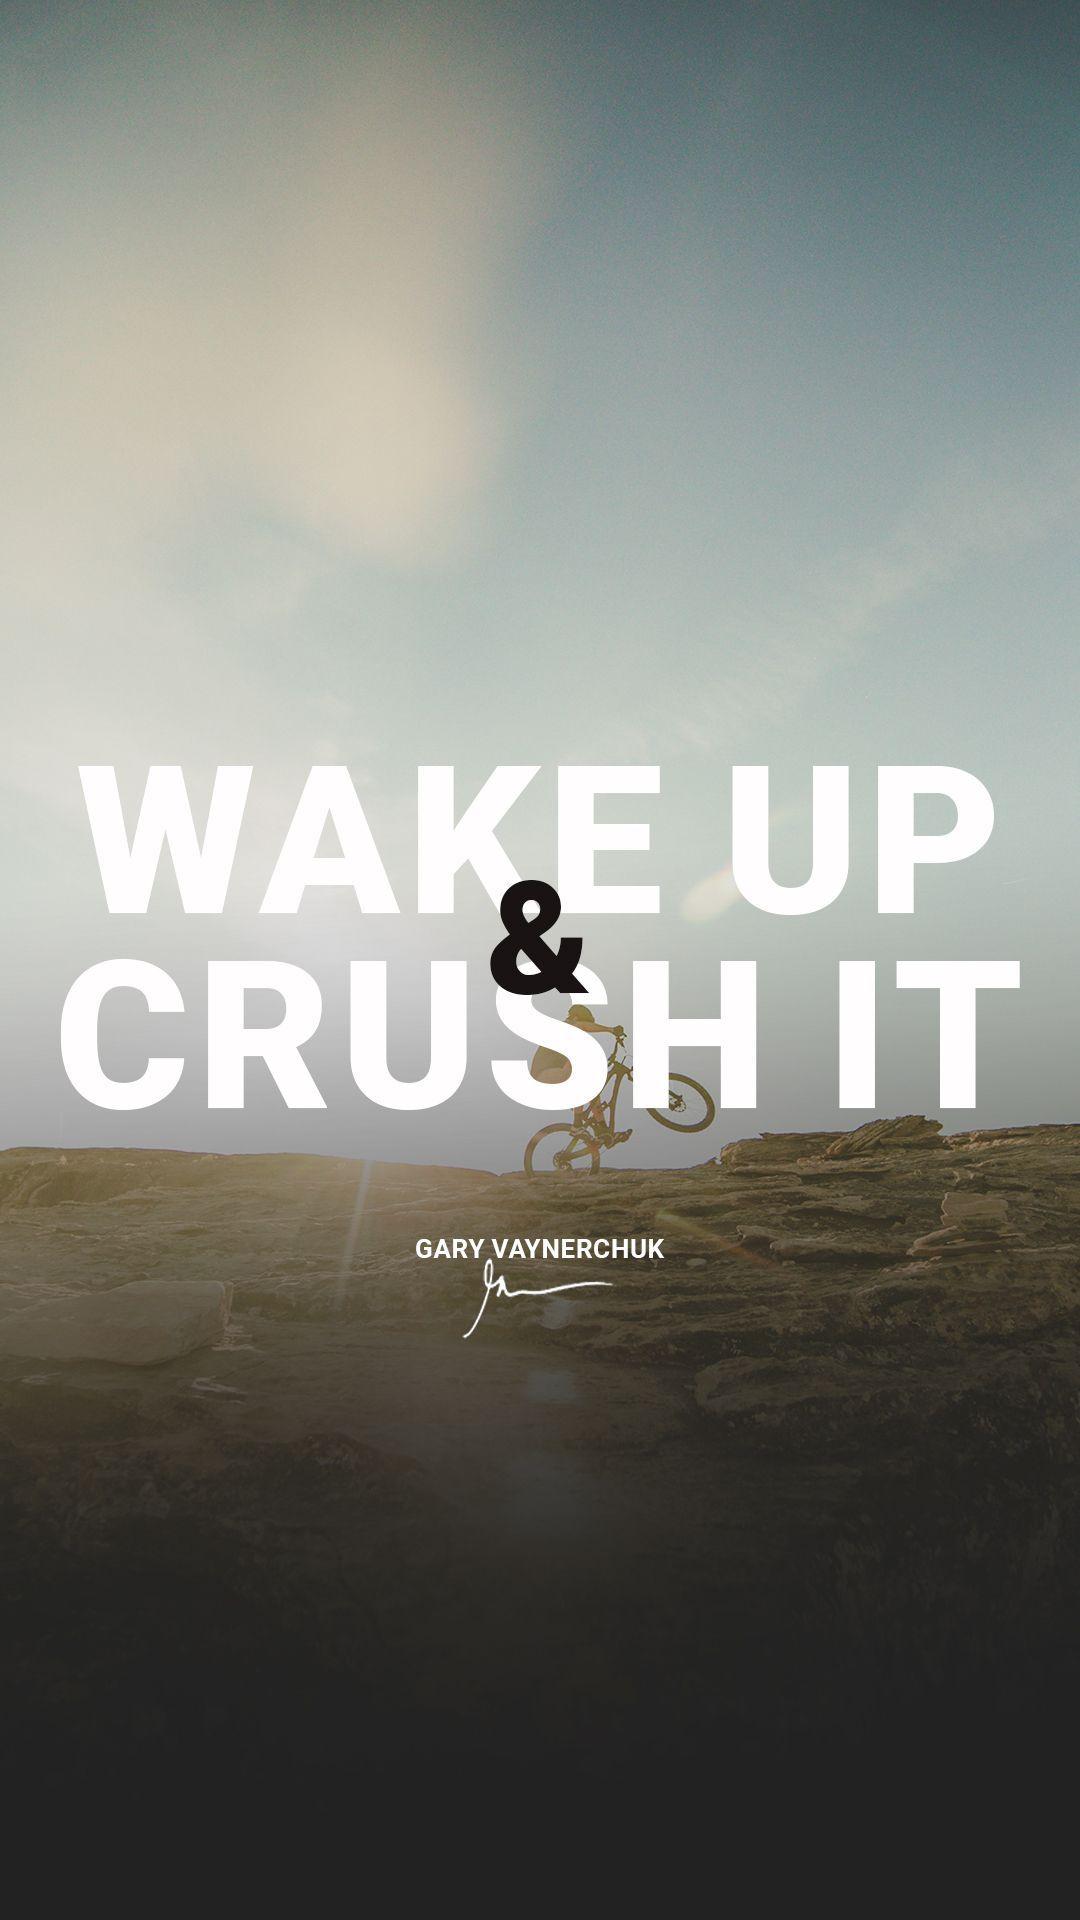 Wake up & Crush it Quotes by Gary Vaynerchuk Millionaire Wallpaper. Gary vaynerchuk quotes, Moticational quotes, Motivational quotes wallpaper